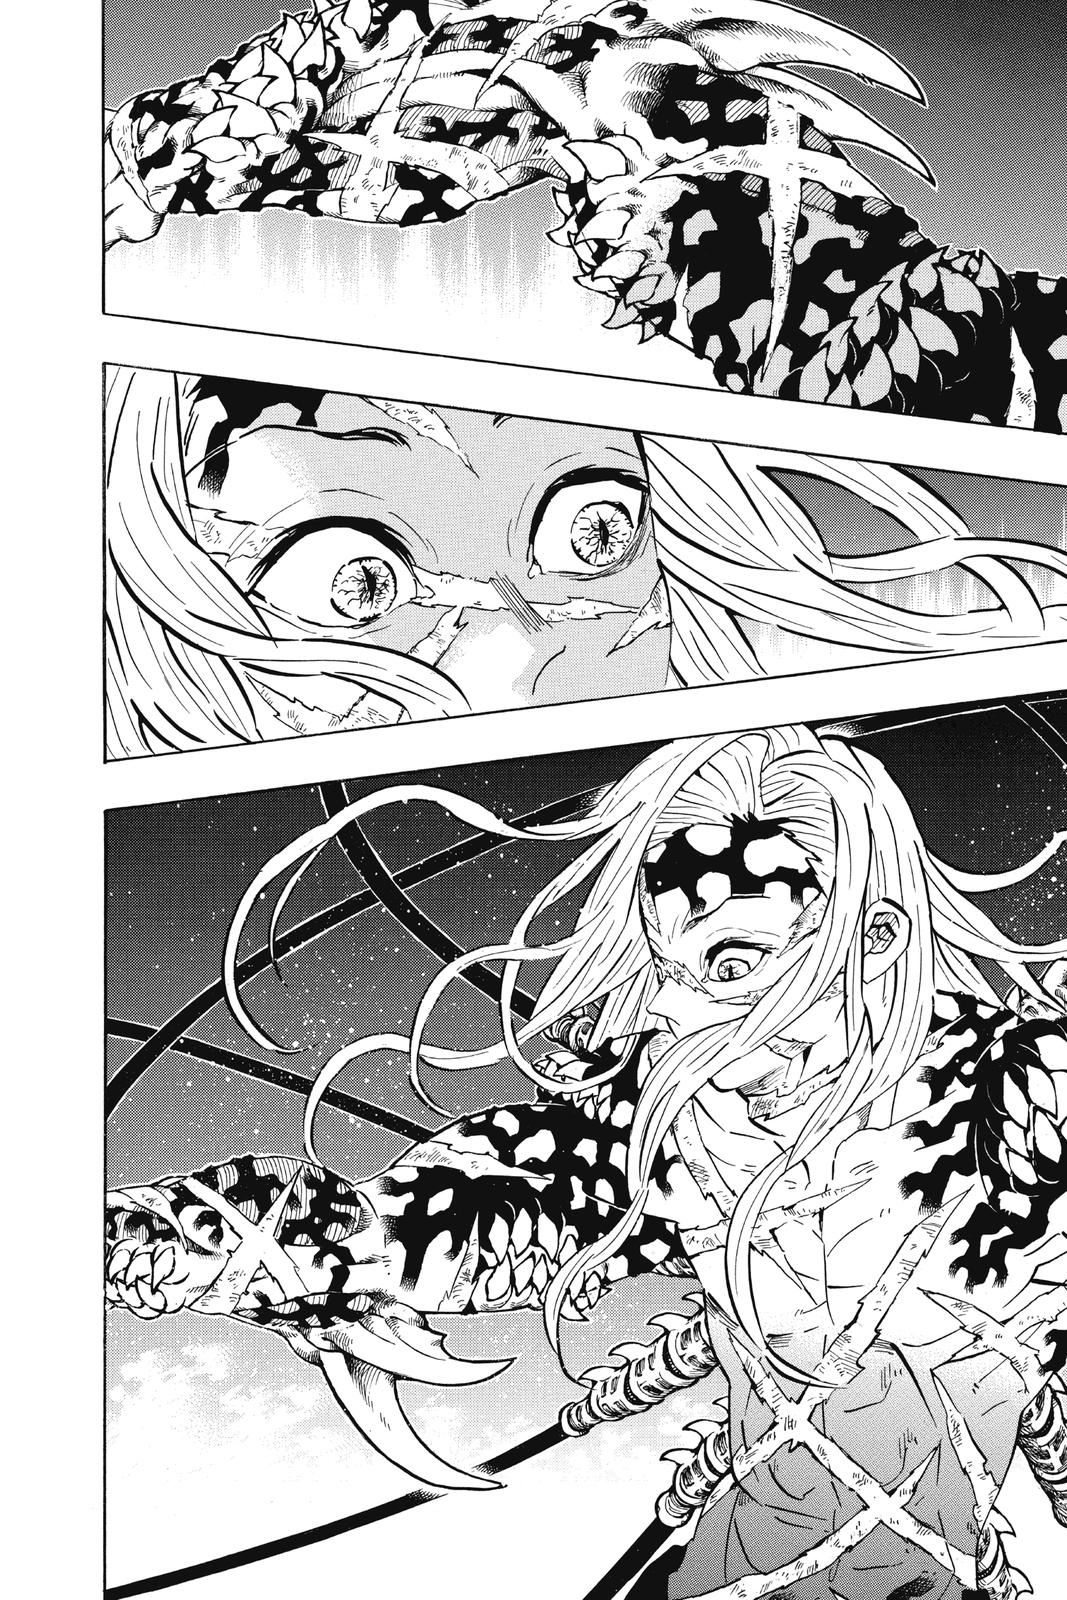 Demon Slayer Manga Manga Chapter - 194 - image 17